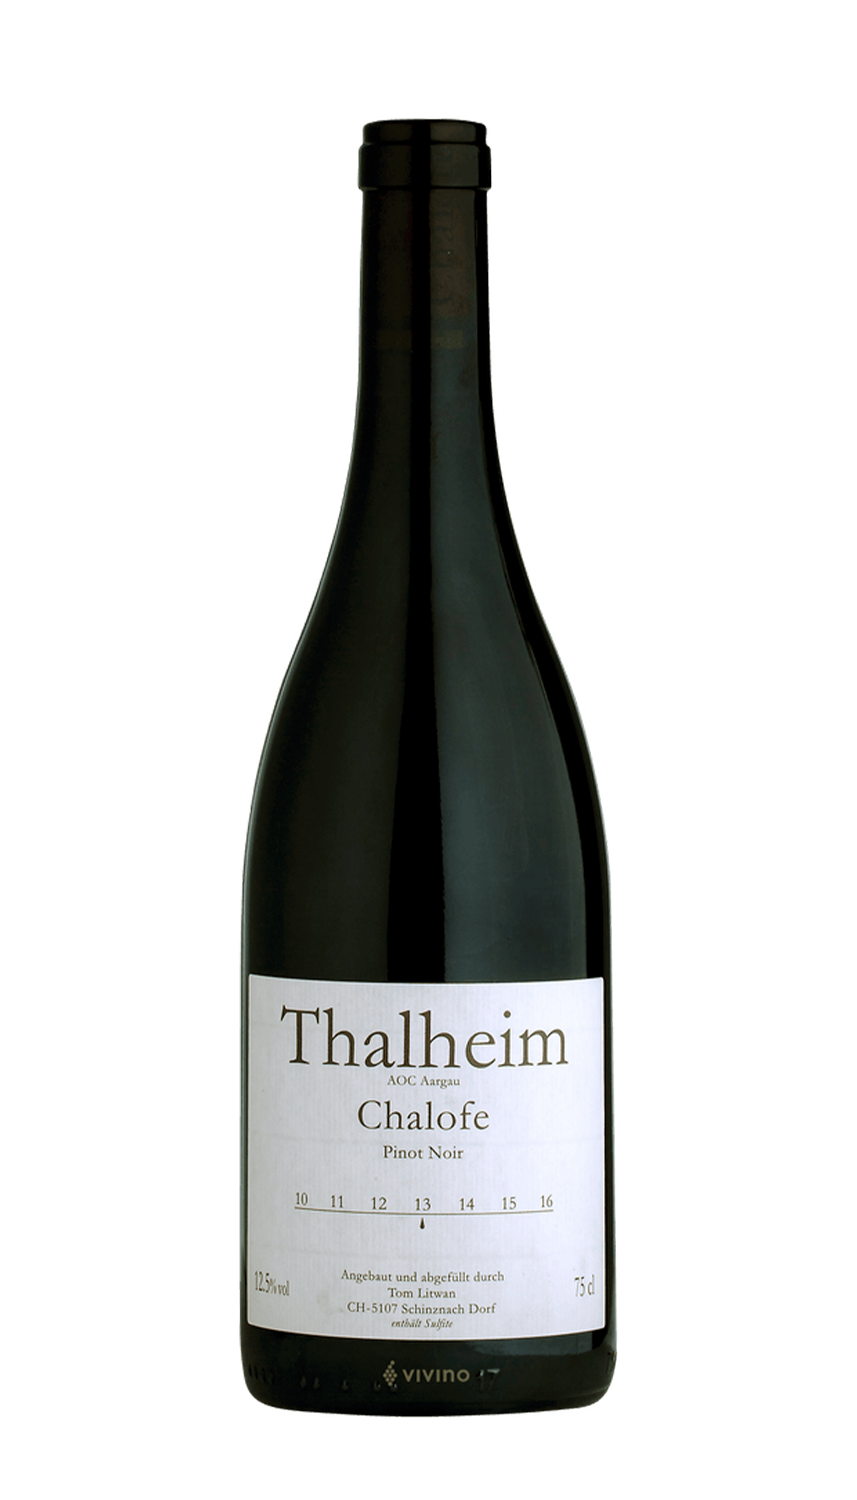 Thalheim Chalofe Bottle